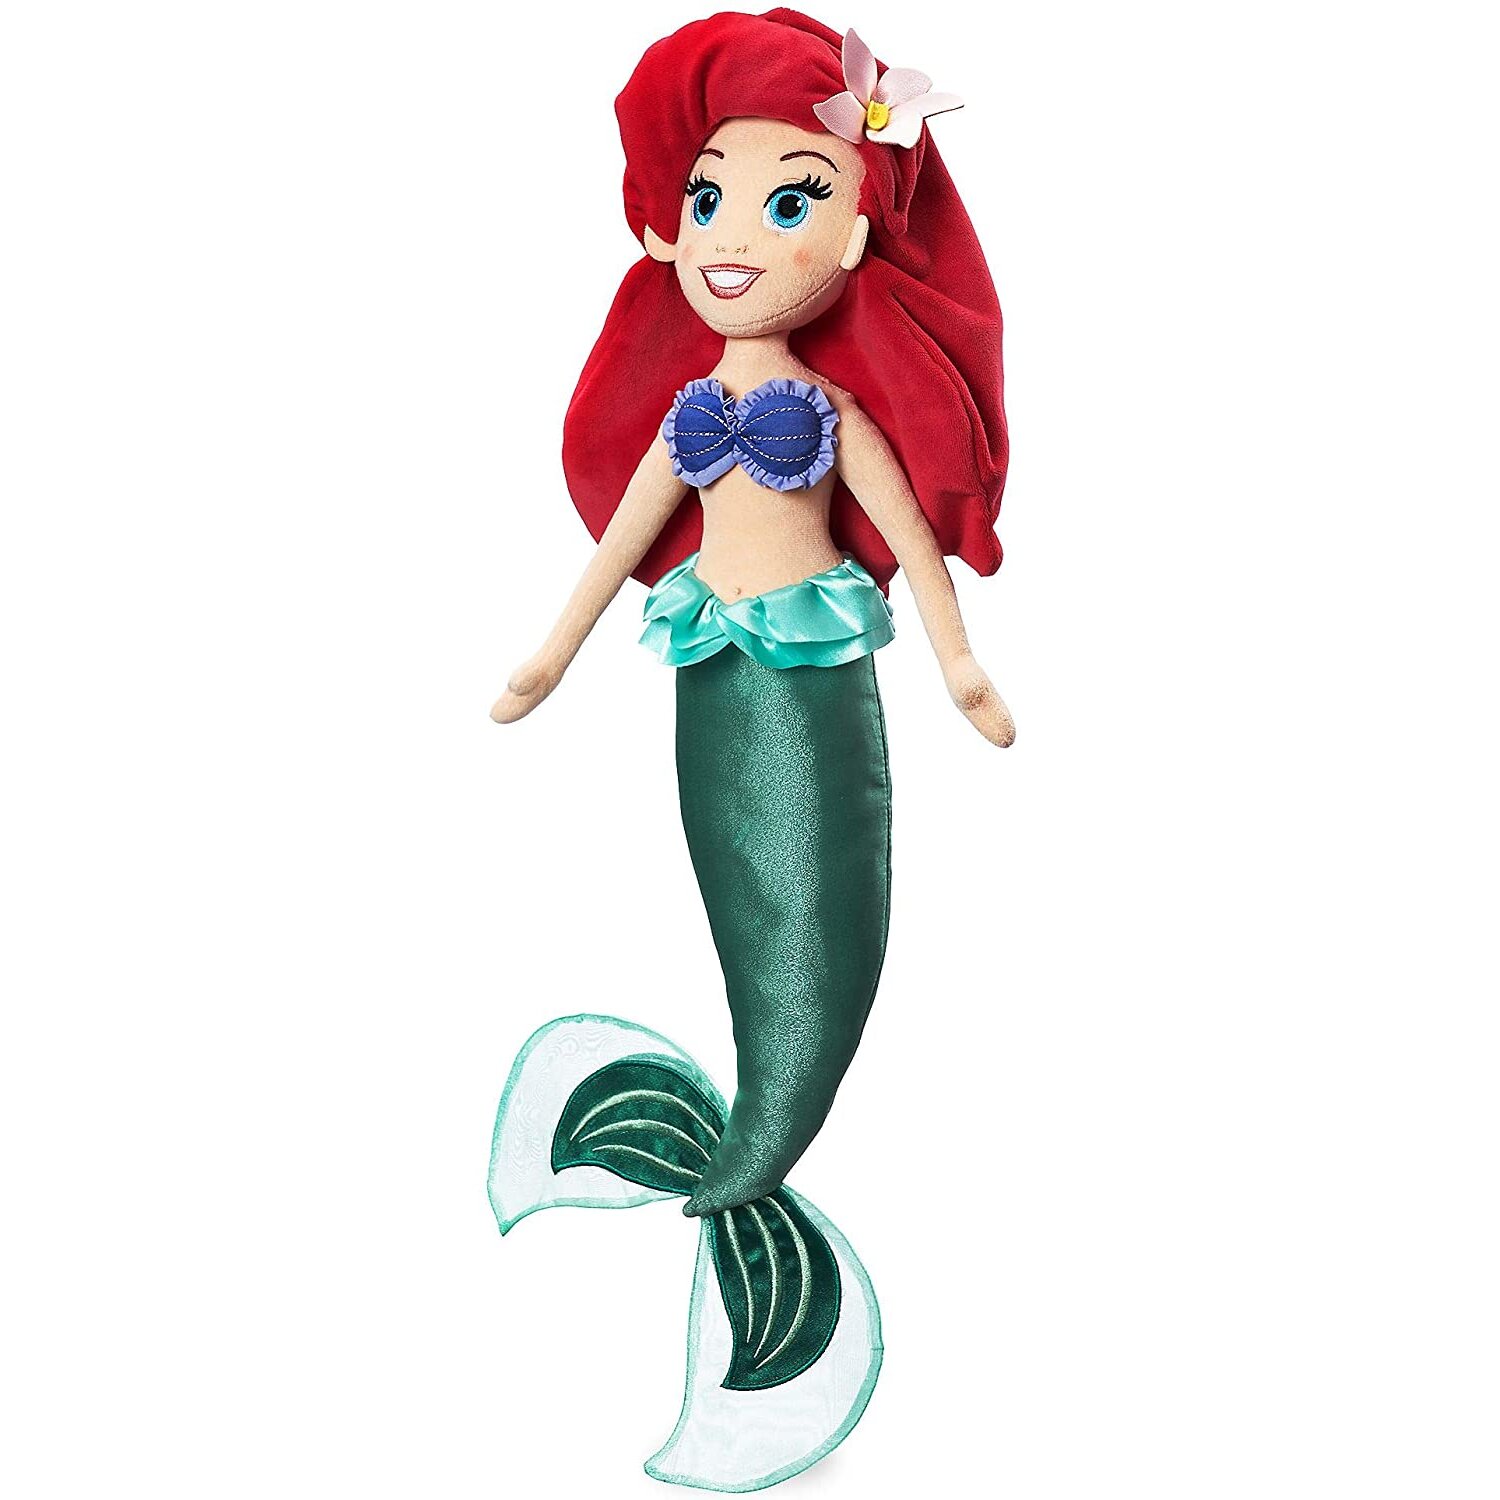 Disney Store Ariel Soft Toy Doll, The Little Mermaid, 58cm/22", Cuddly